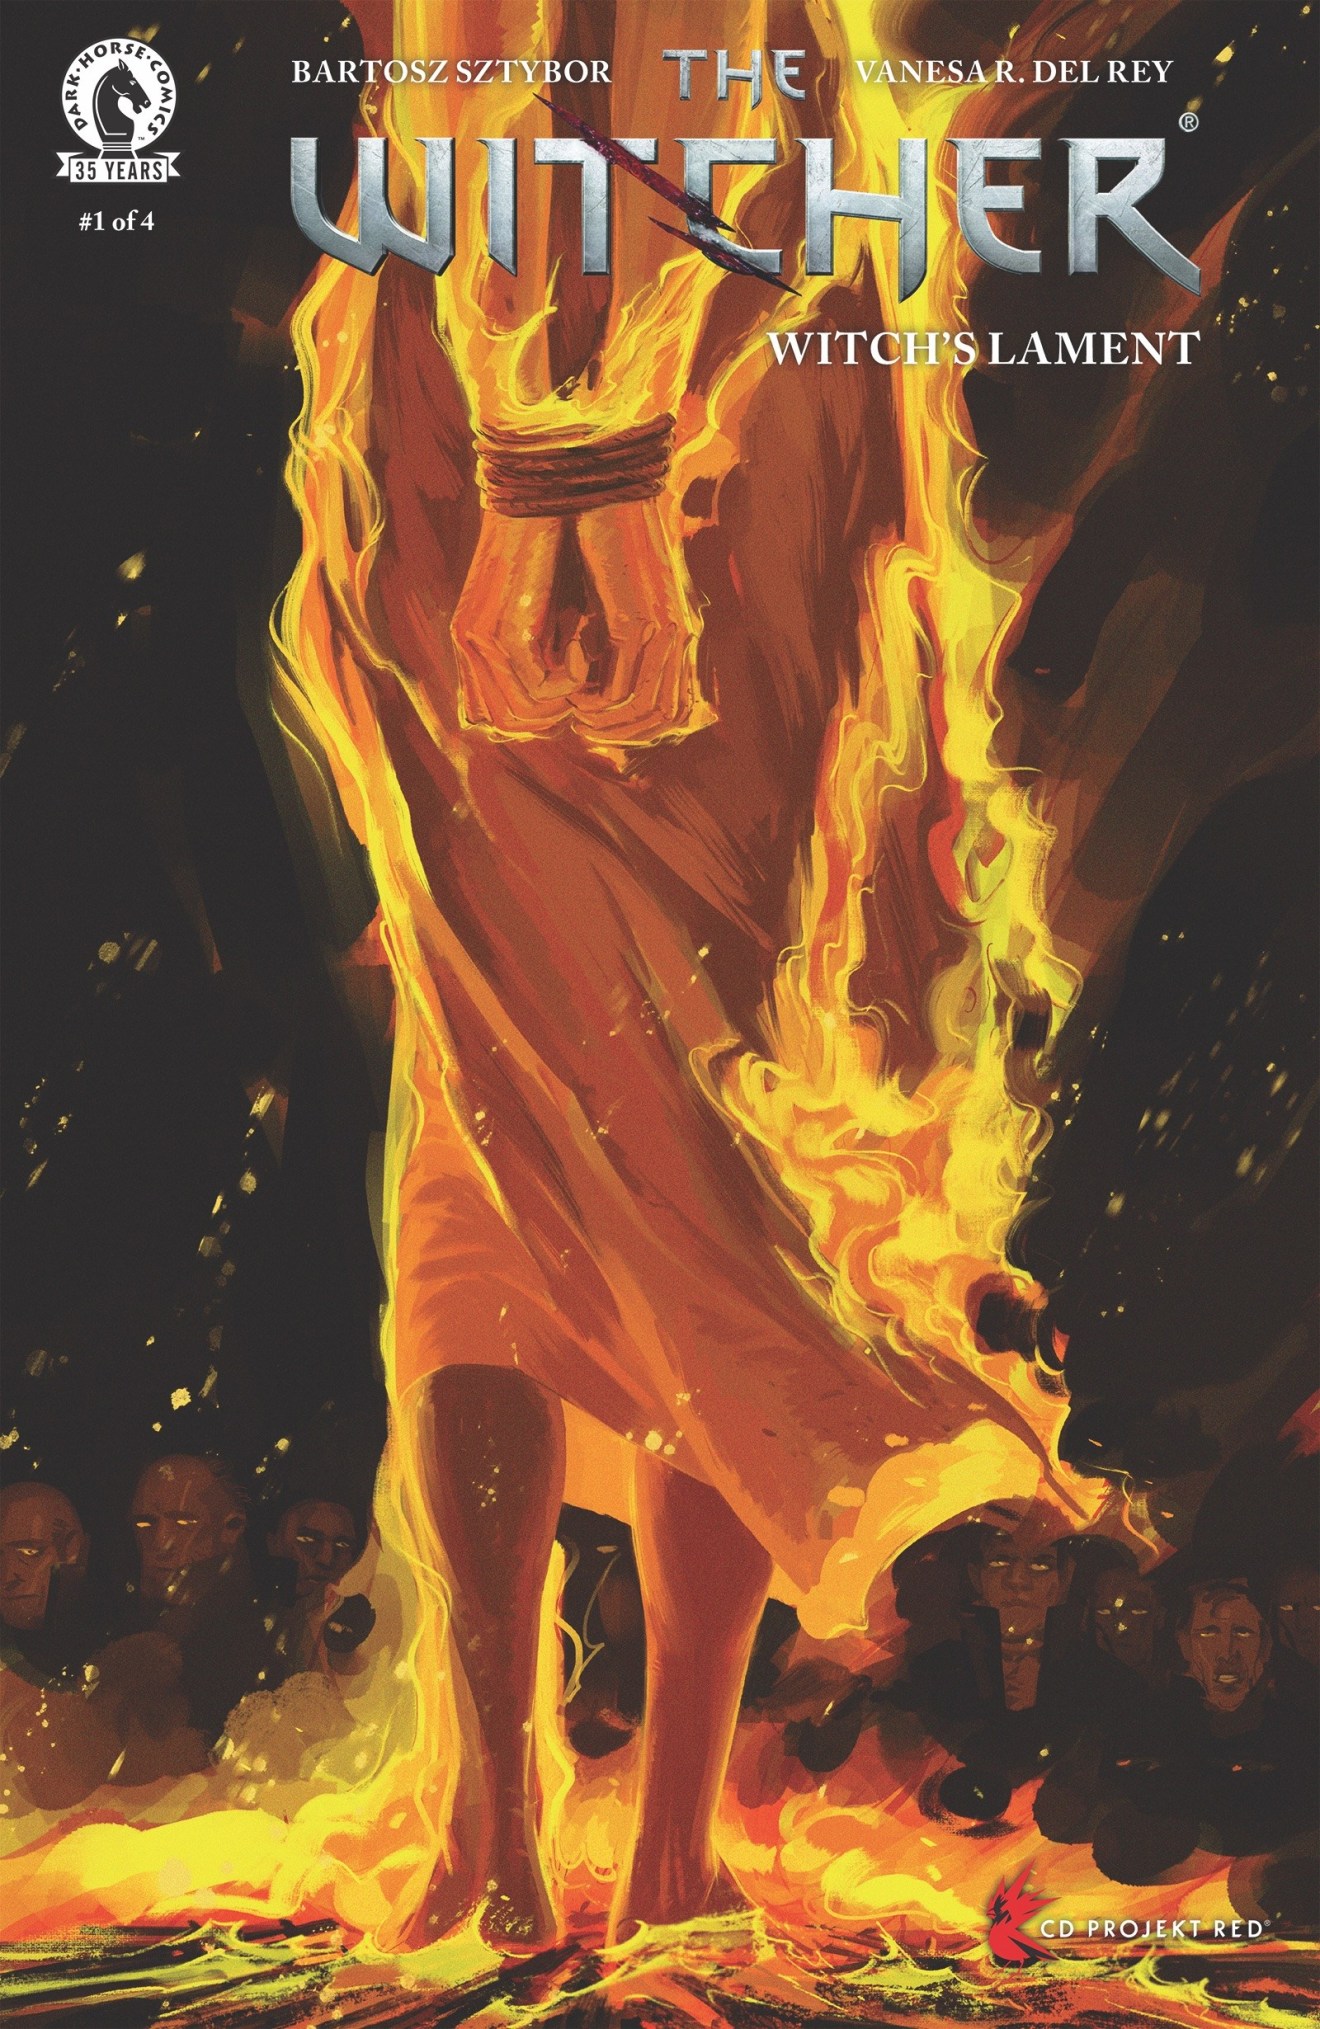 黑馬漫畫將於5月26日發行《巫師》漫畫系列新作